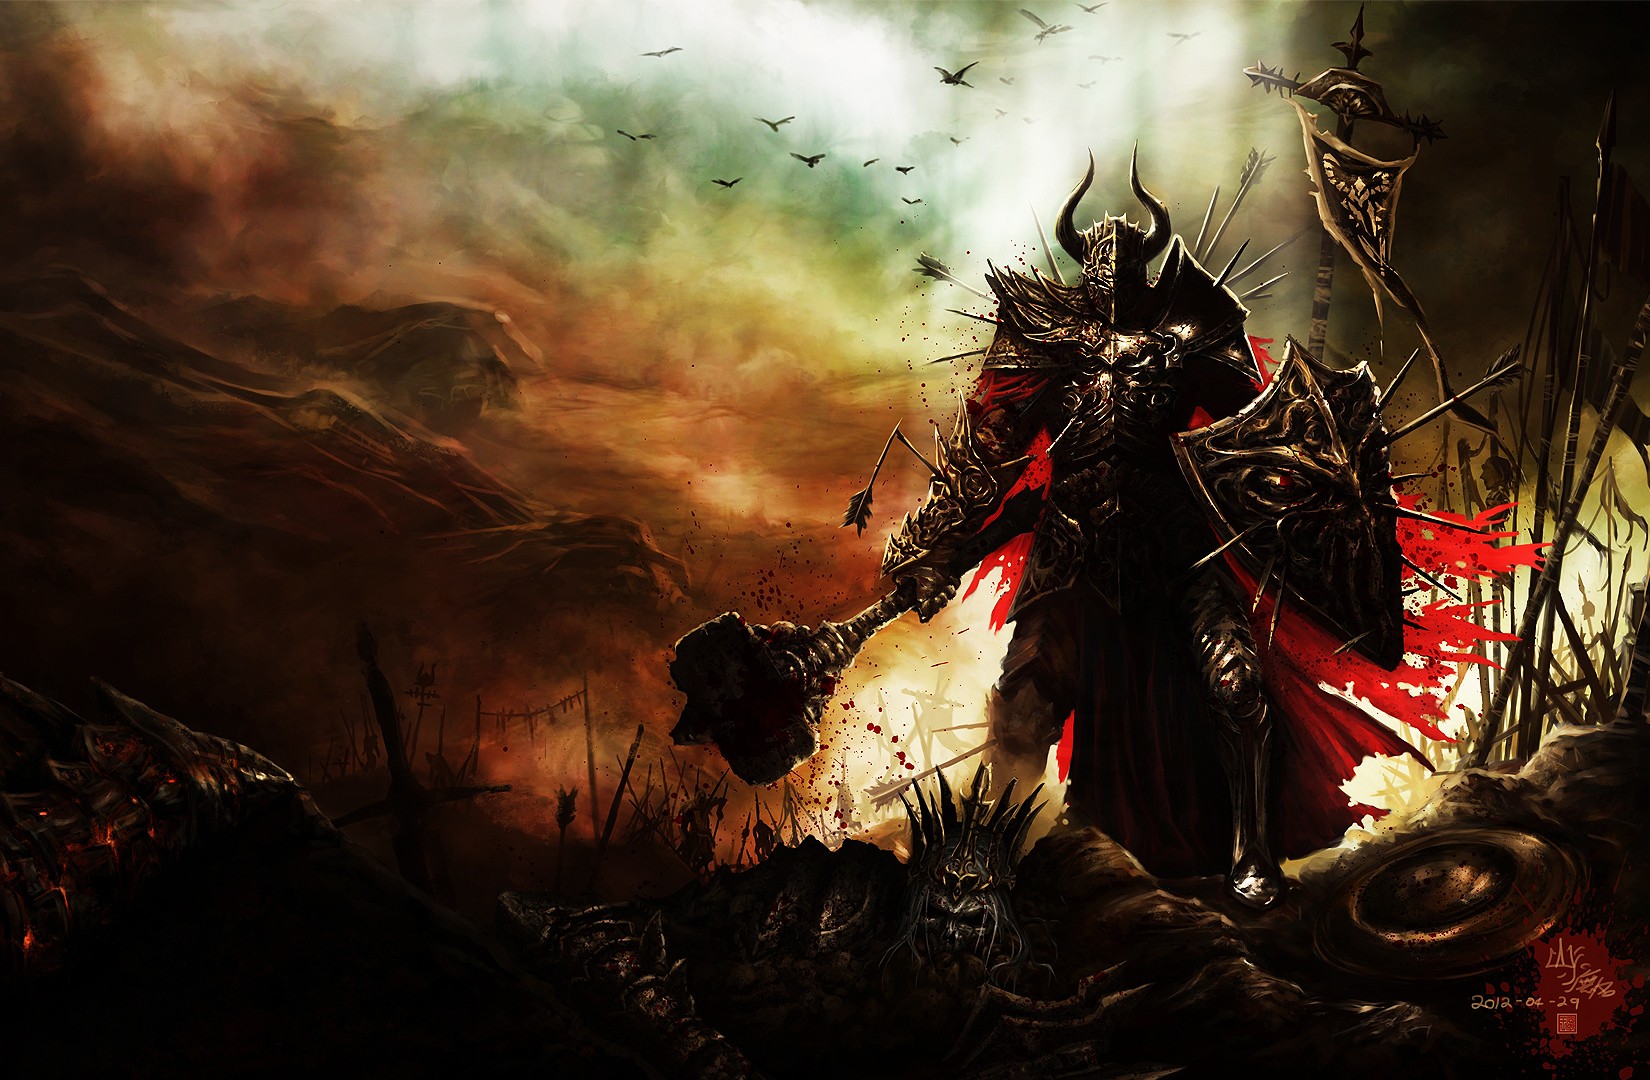 Diablo III Wallpaper